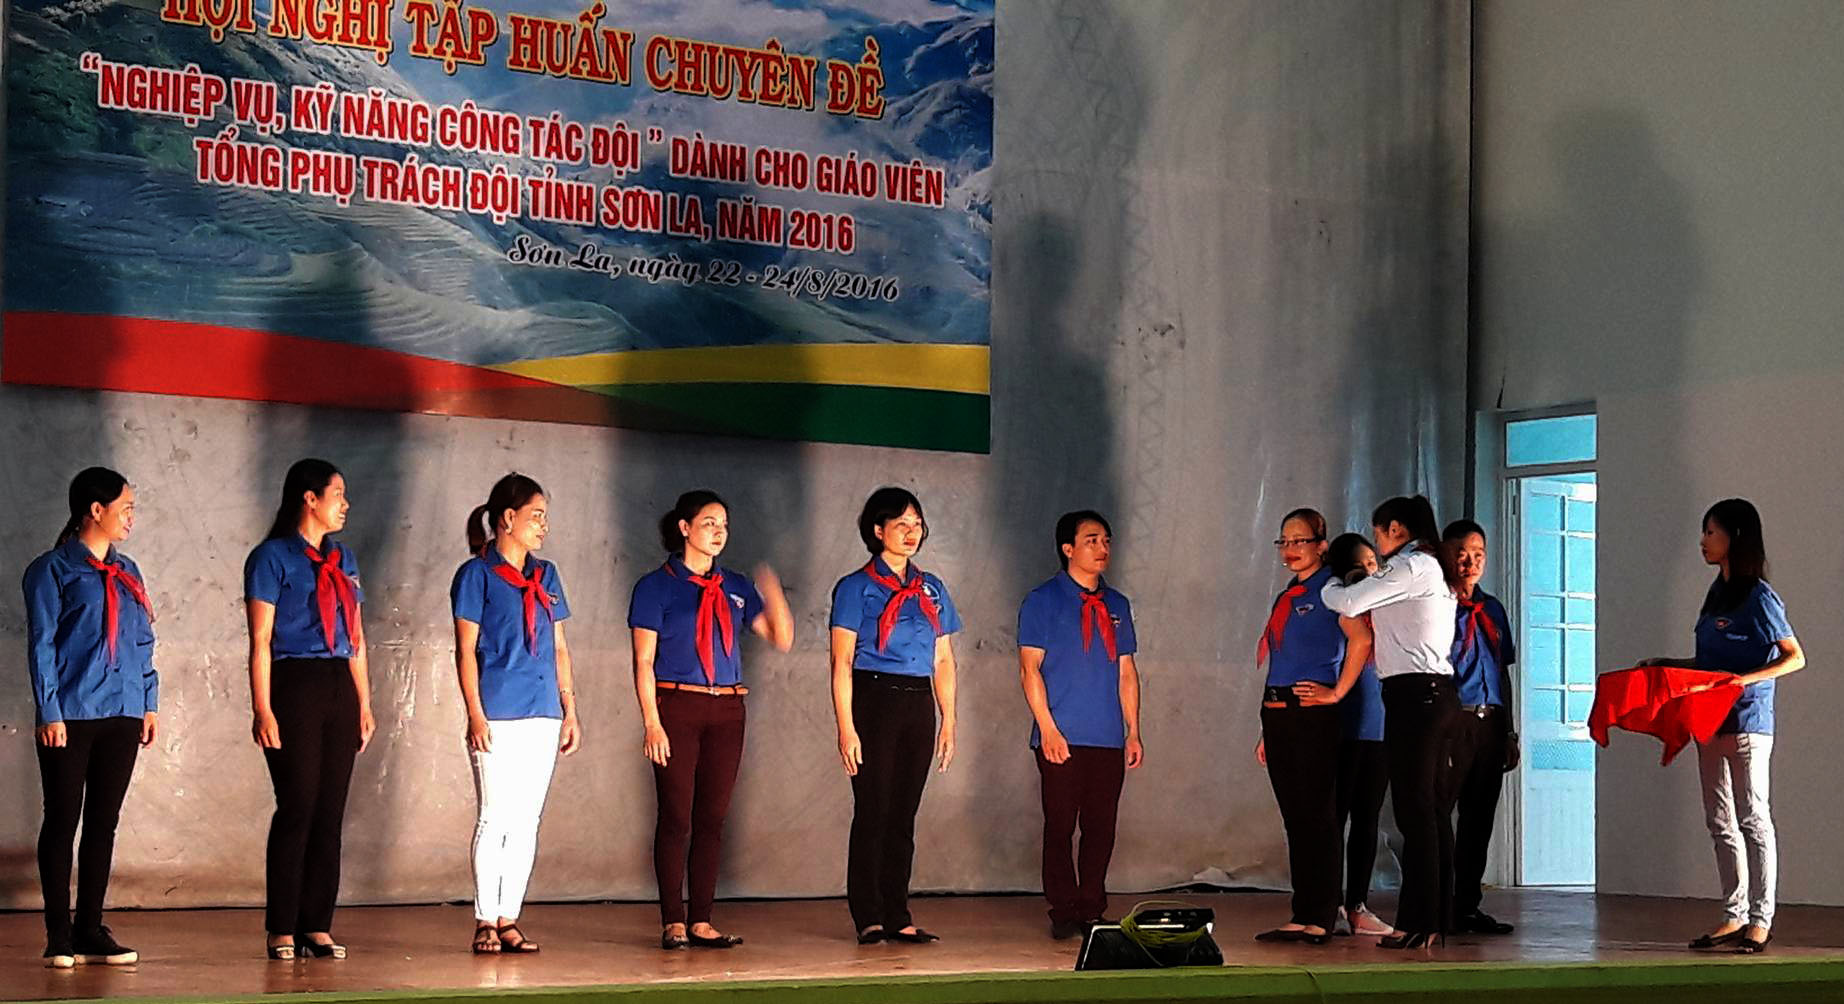 Khai mạc Hội nghị tập huấn chuyên đề “Kỹ năng, nghiệp vụ công tác Đội” dành cho đội ngũ Giáo viên - Tổng phụ trách Đội thuộc địa bàn tỉnh Sơn La, năm 2016.